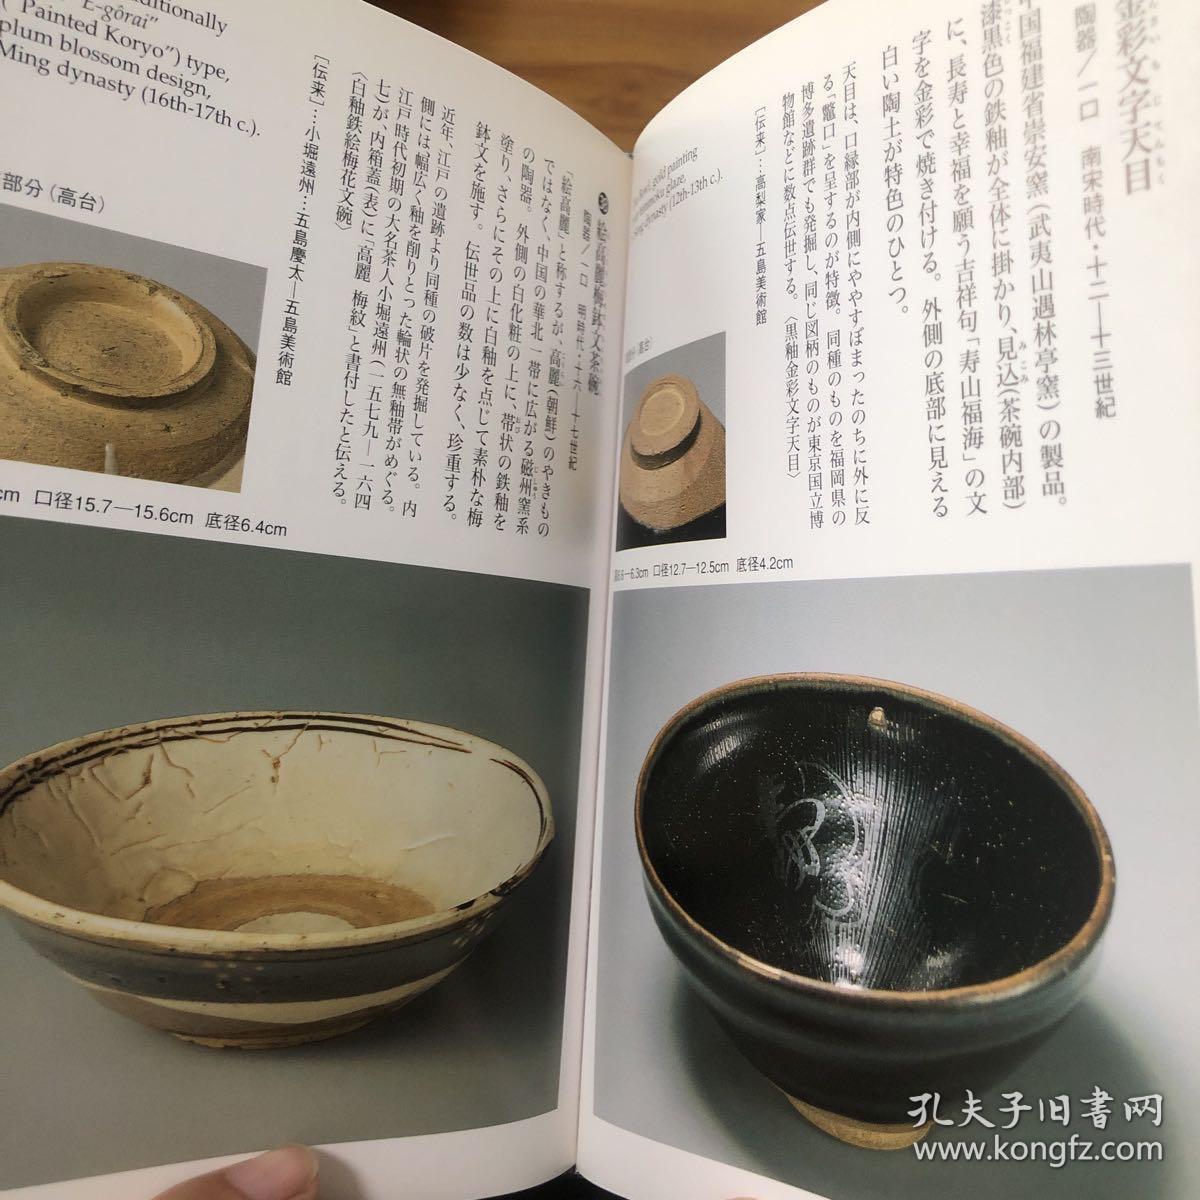 日本五岛美术馆收藏茶具（南宋木叶纹茶碗、南宋金彩文字天目茶盏、南宋青瓷凤凰耳瓶（精装32开）